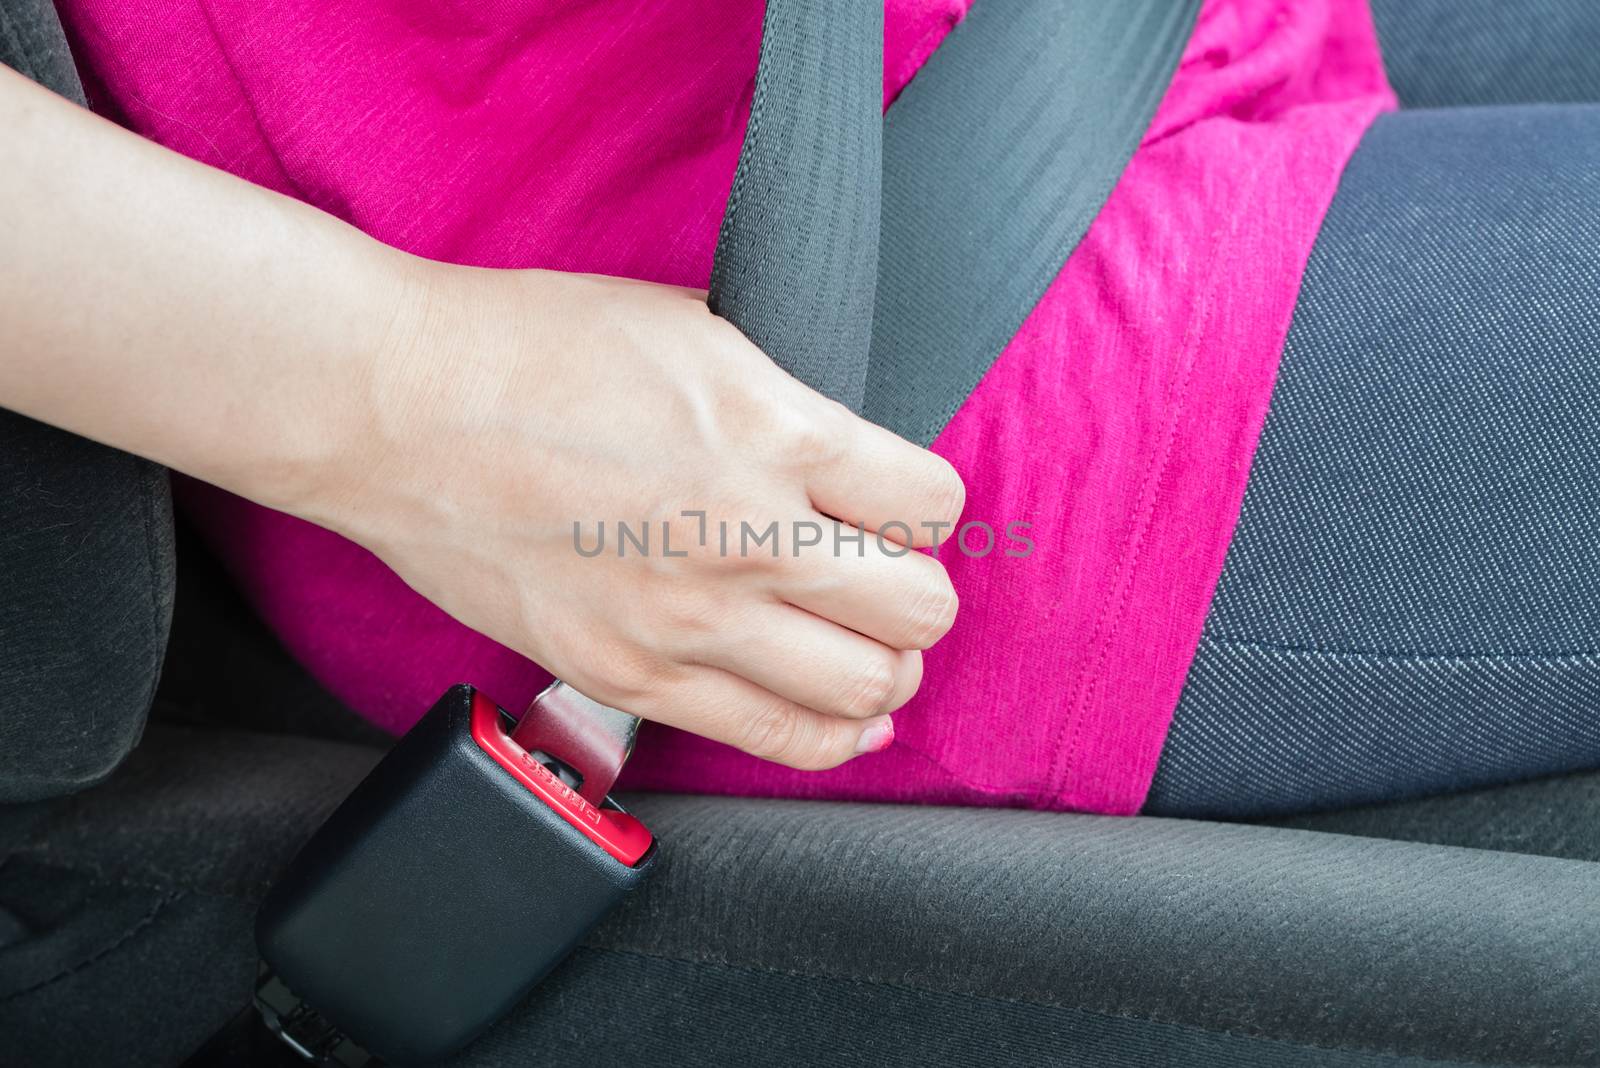 A girl wearing a pink shirt buckling a seatbelt